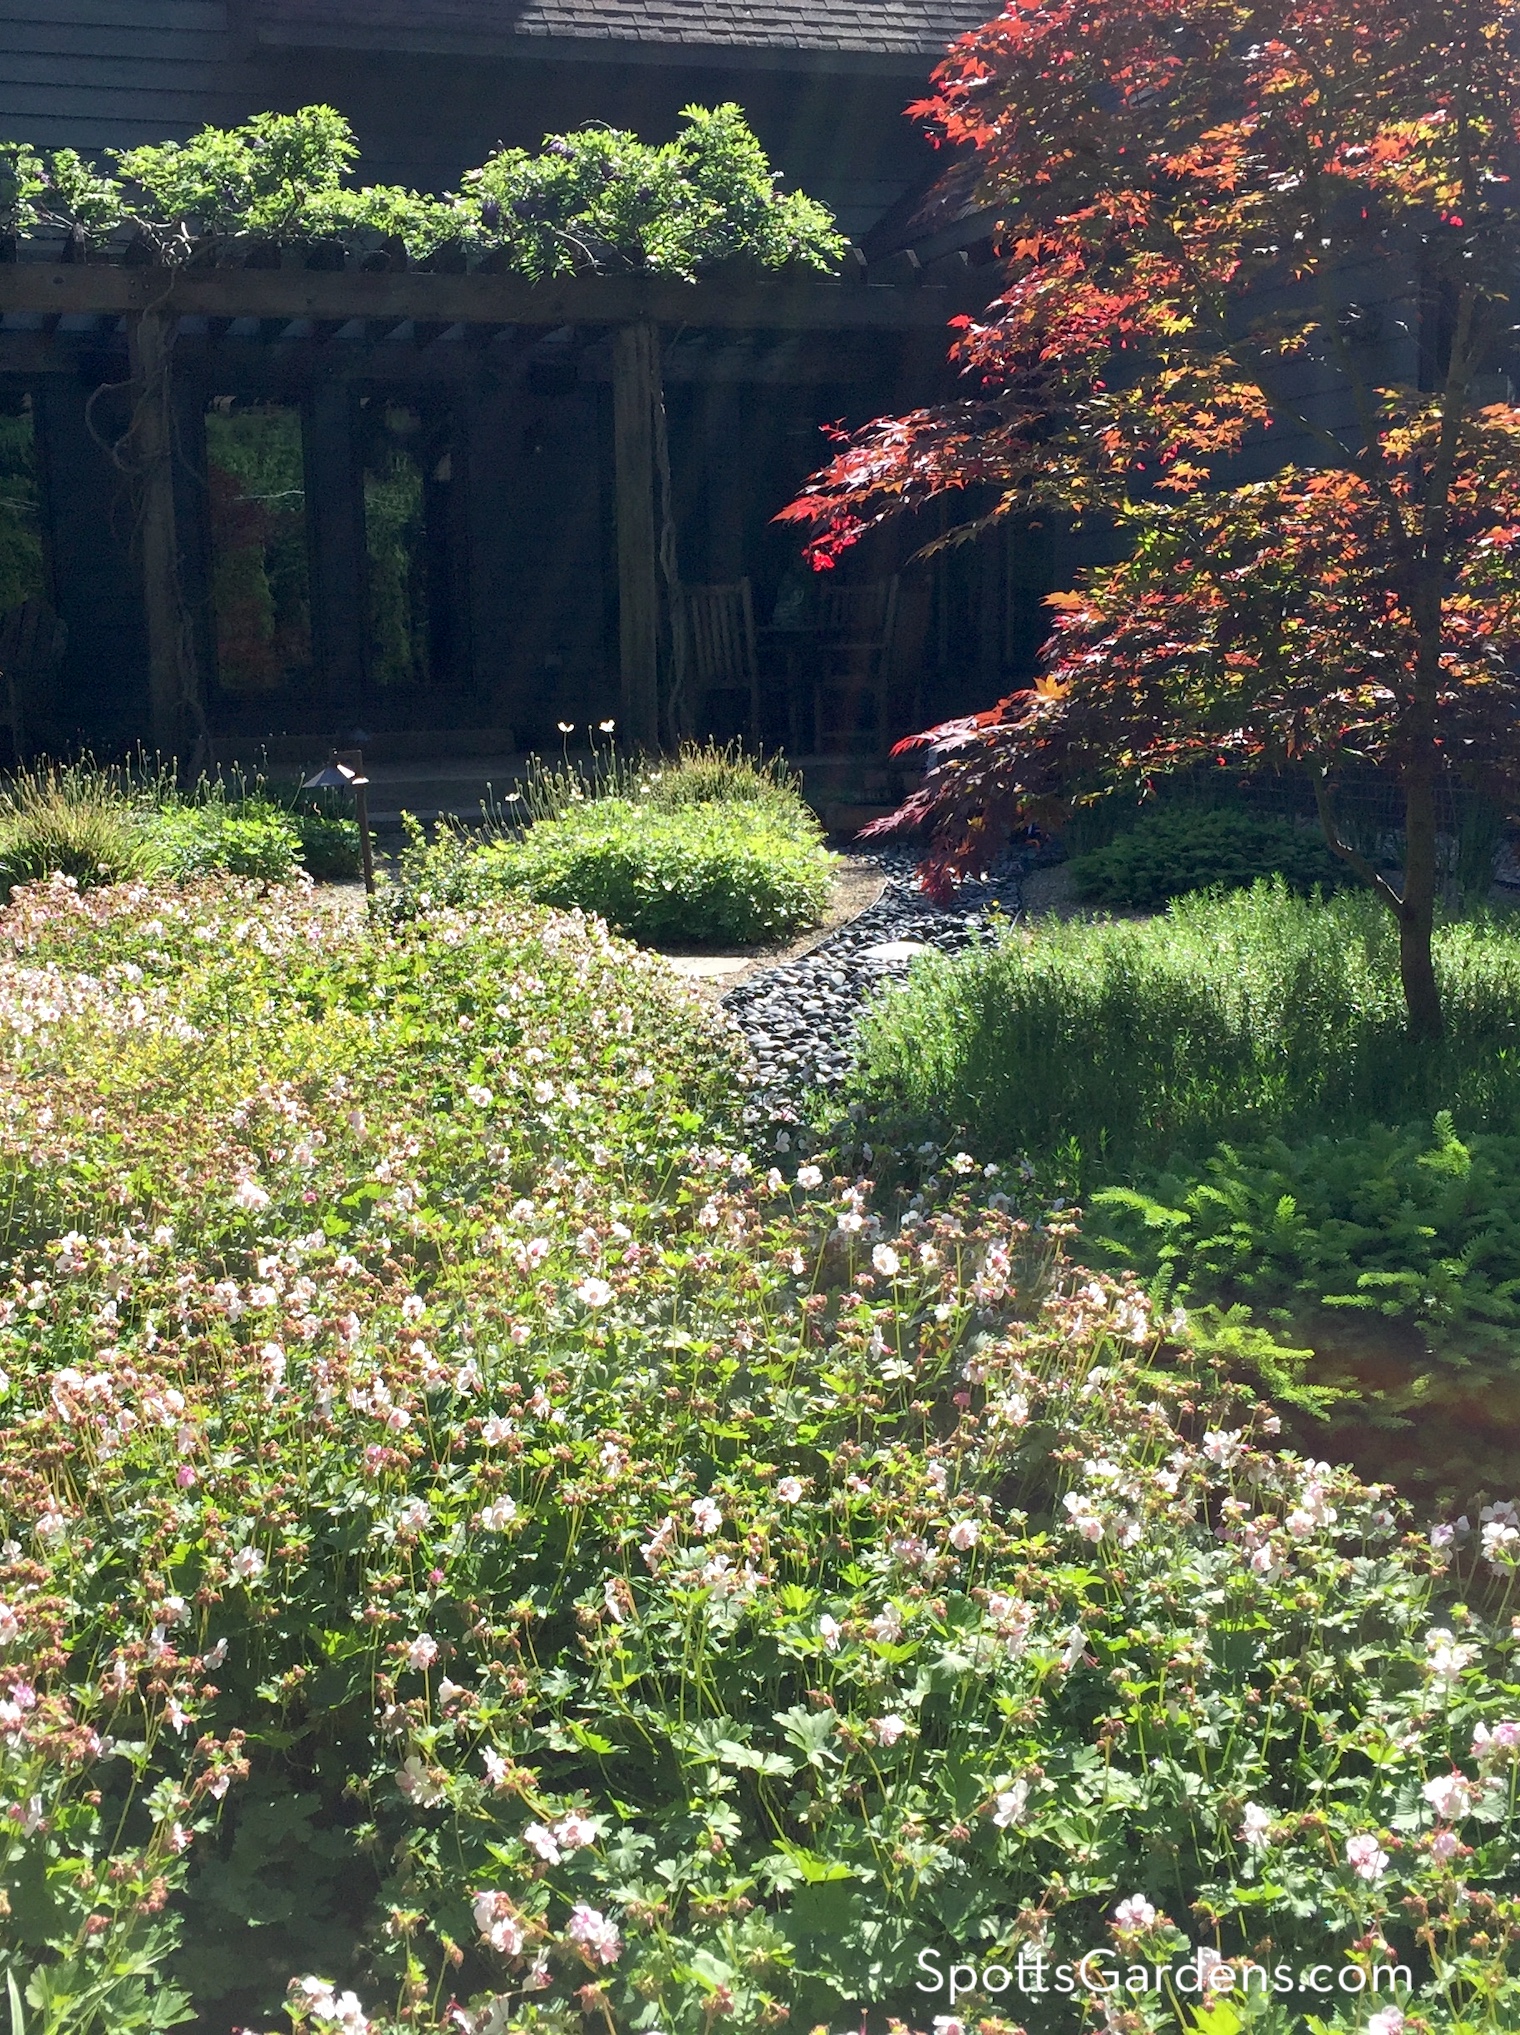 Japanese inspired garden with pergola